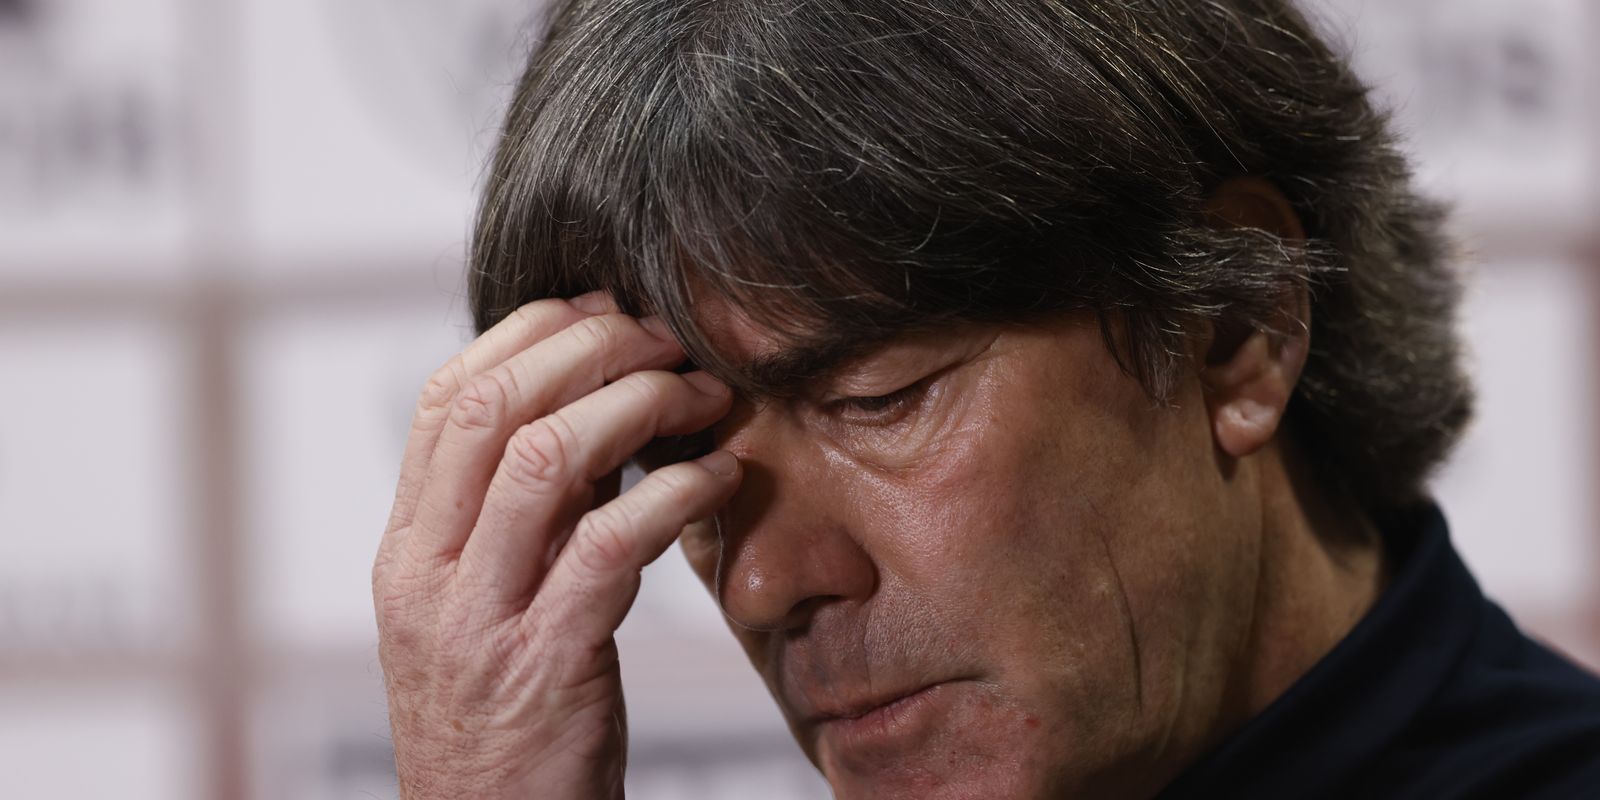 Alemanha pode ser eliminada se perder para a Espanha no próximo domingo